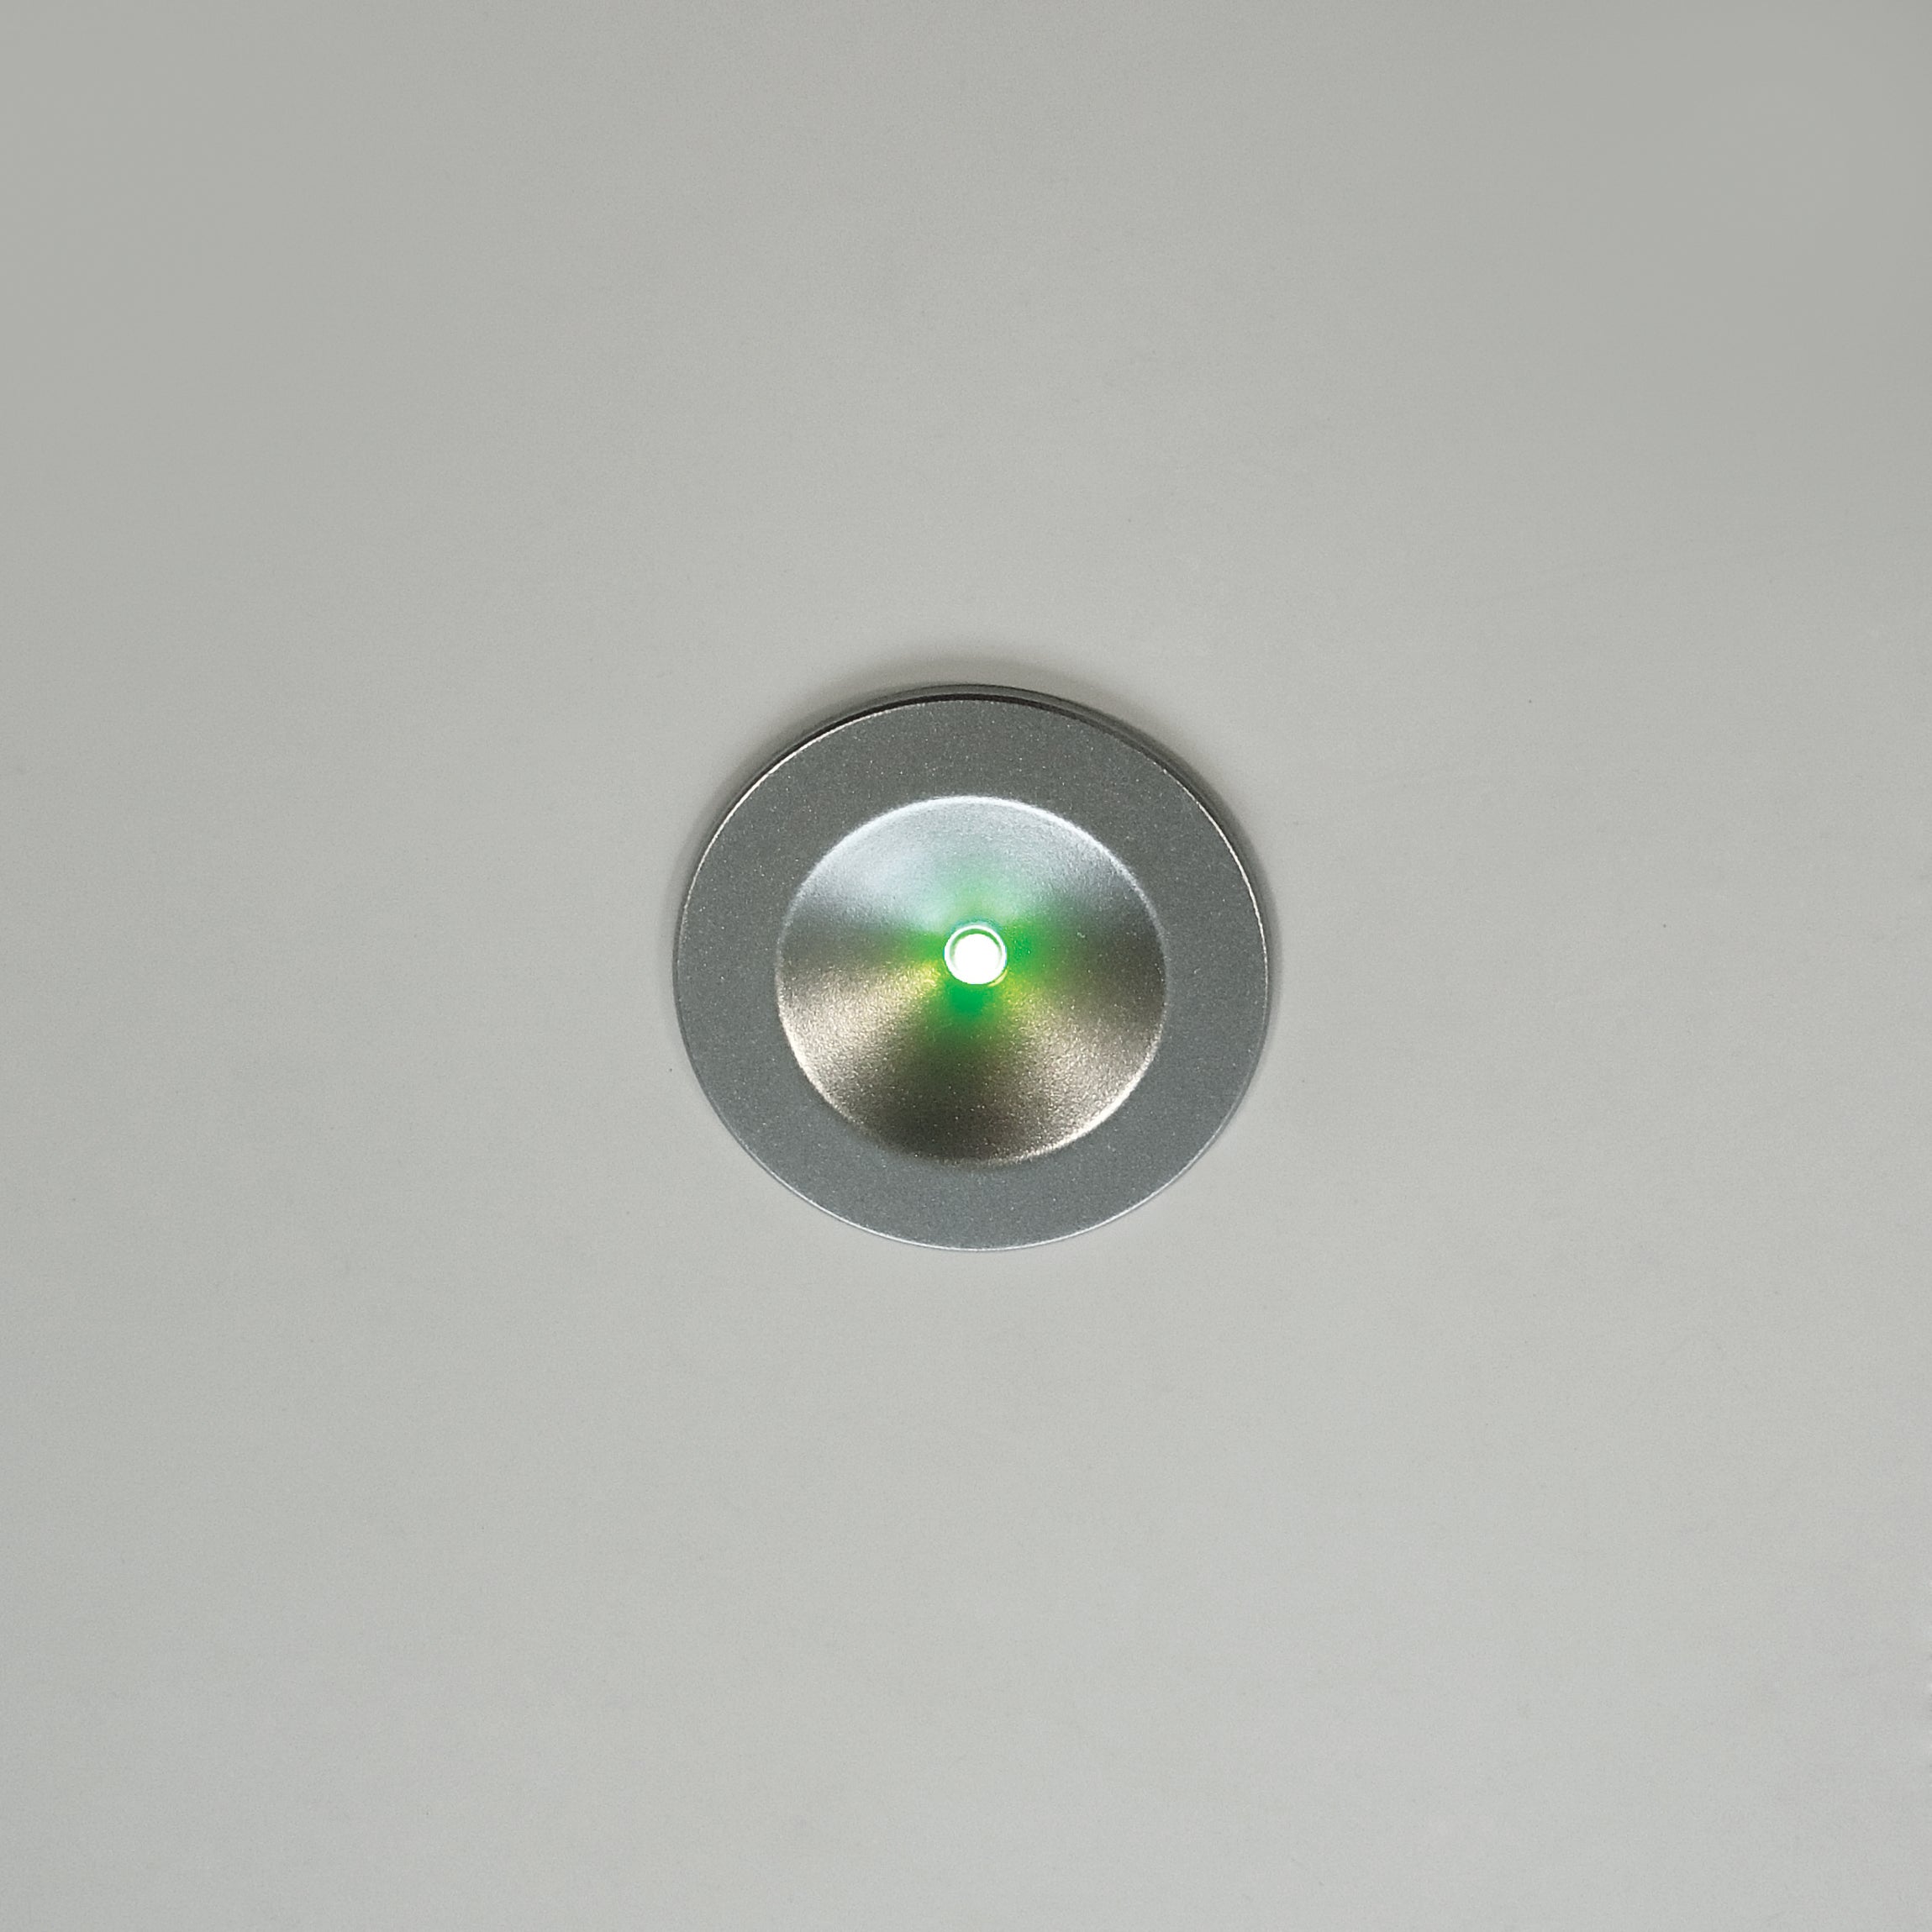 Eterna KEM3LIDL Li-Ion Emergency LED Downlight White